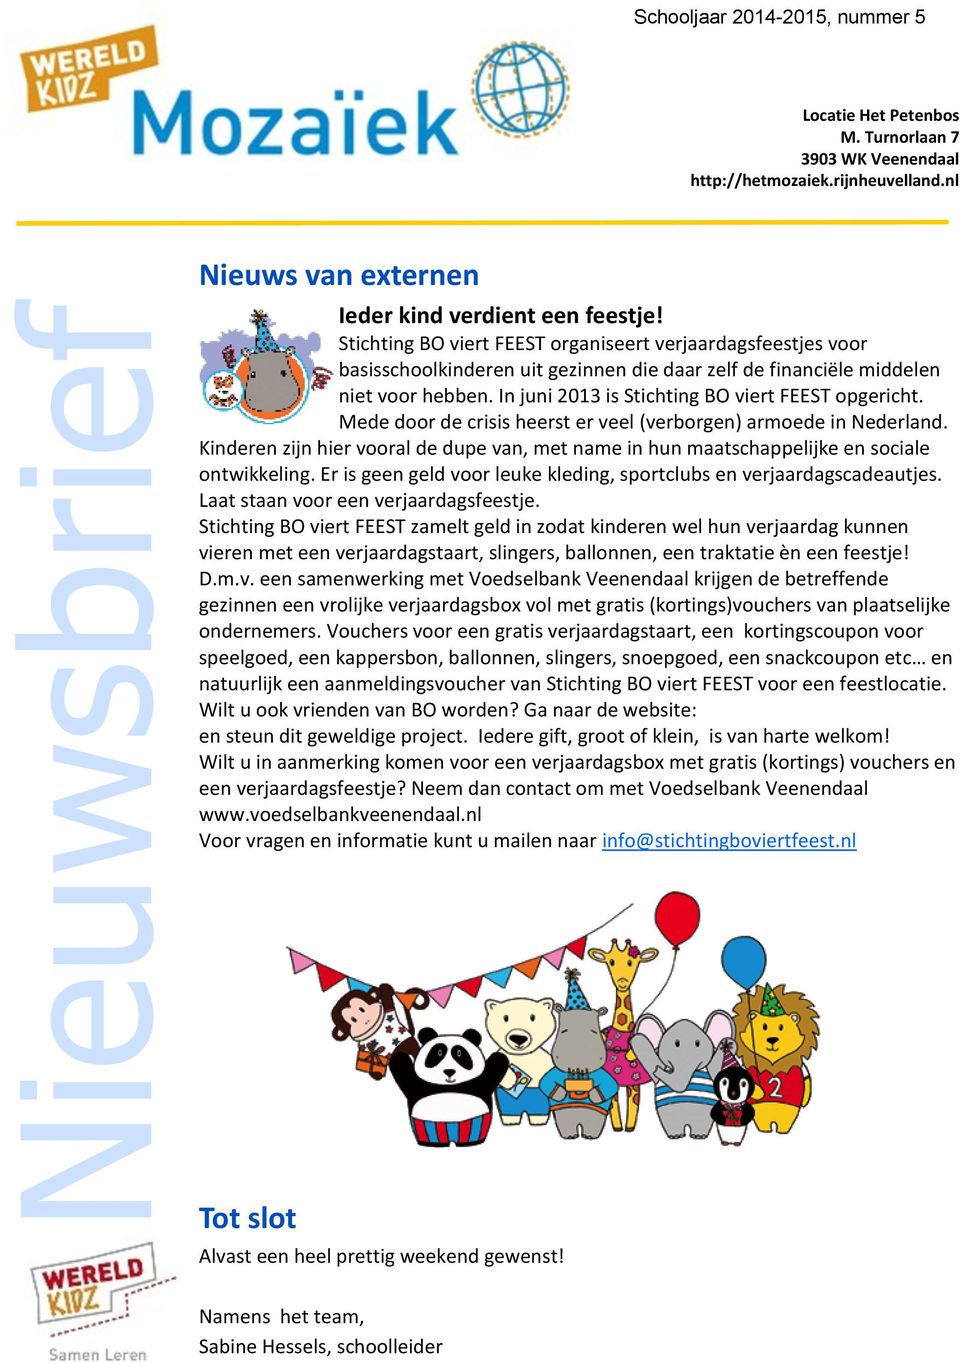 In juni 2013 is Stichting BO viert FEEST opgericht. Mede door de crisis heerst er veel (verborgen) armoede in Nederland.